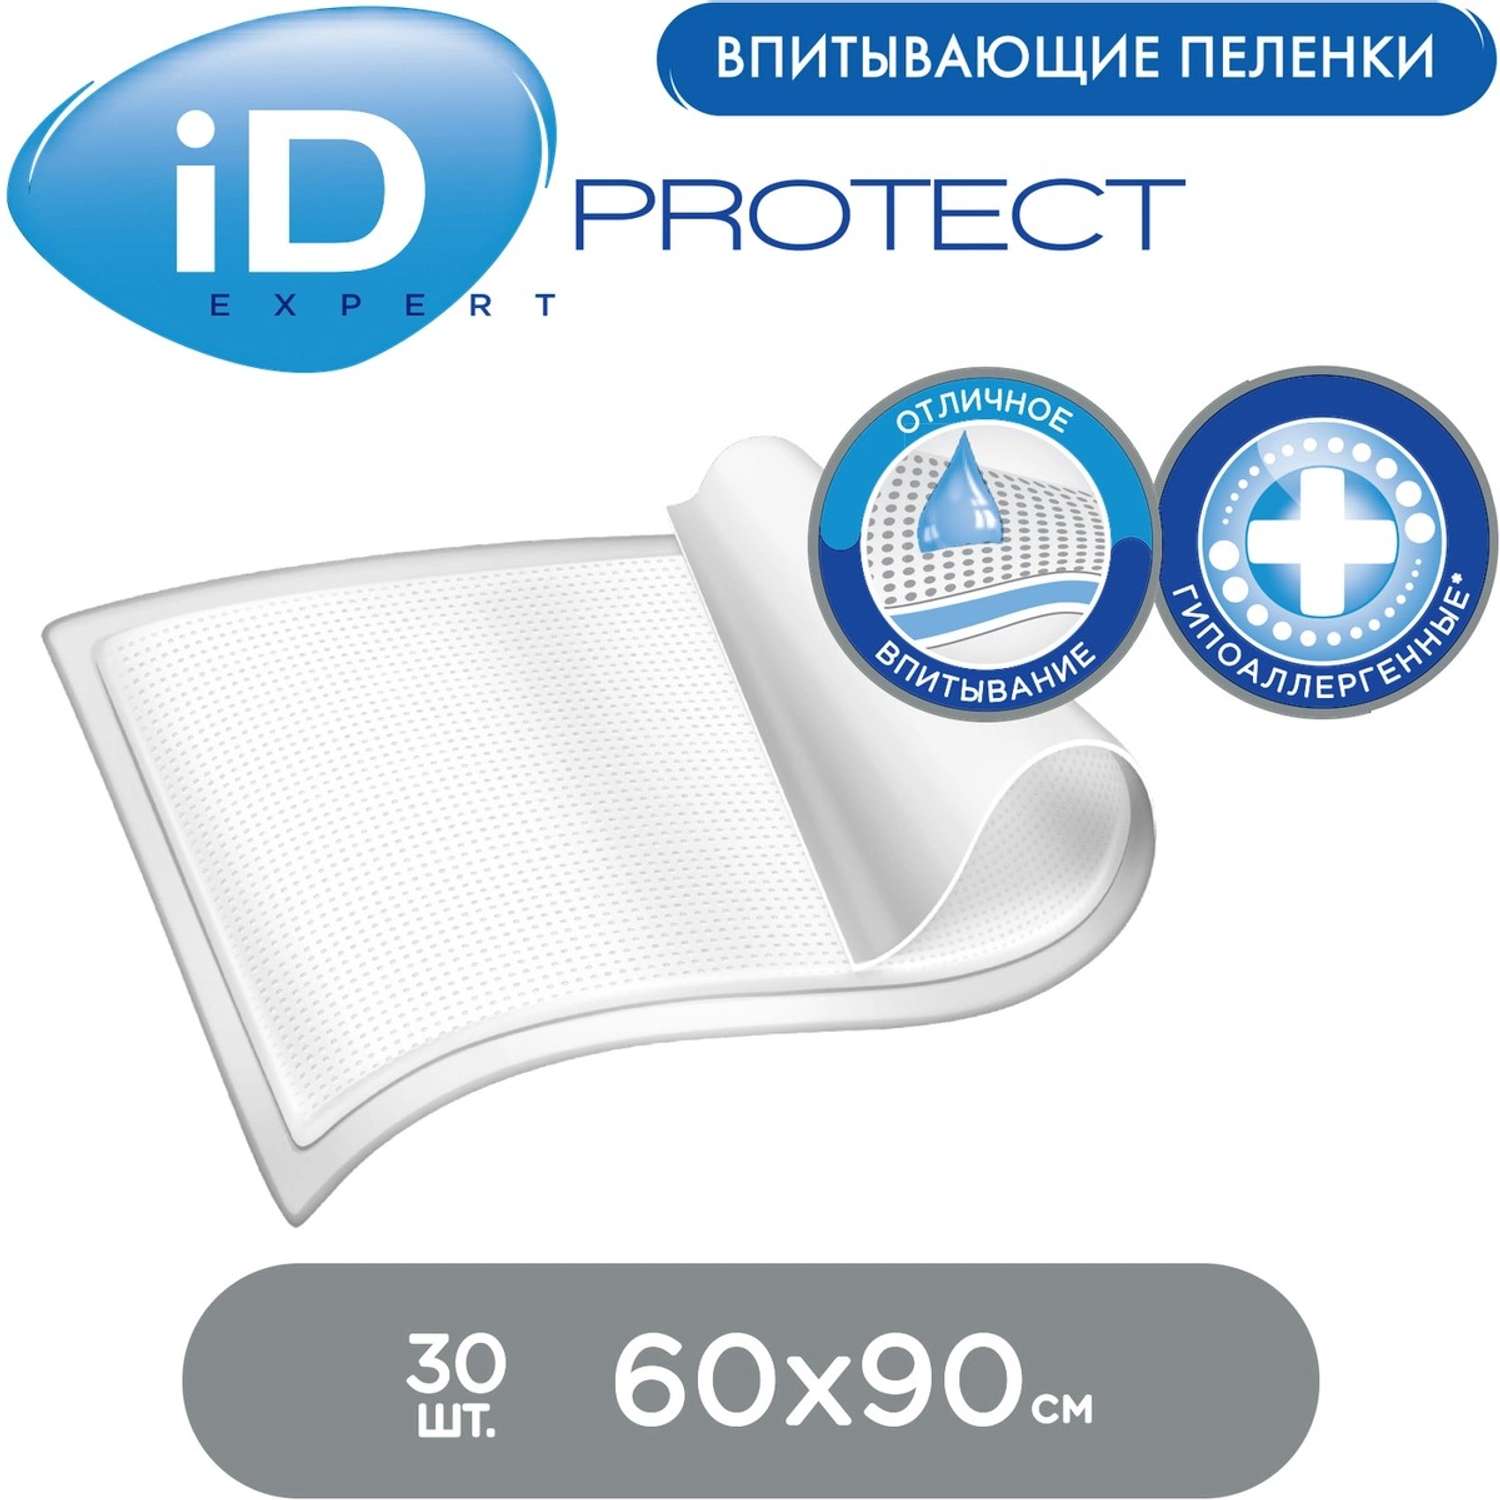 Пеленки впитывающие iD PROTECT EXPERT 60х90 30 шт. - фото 3